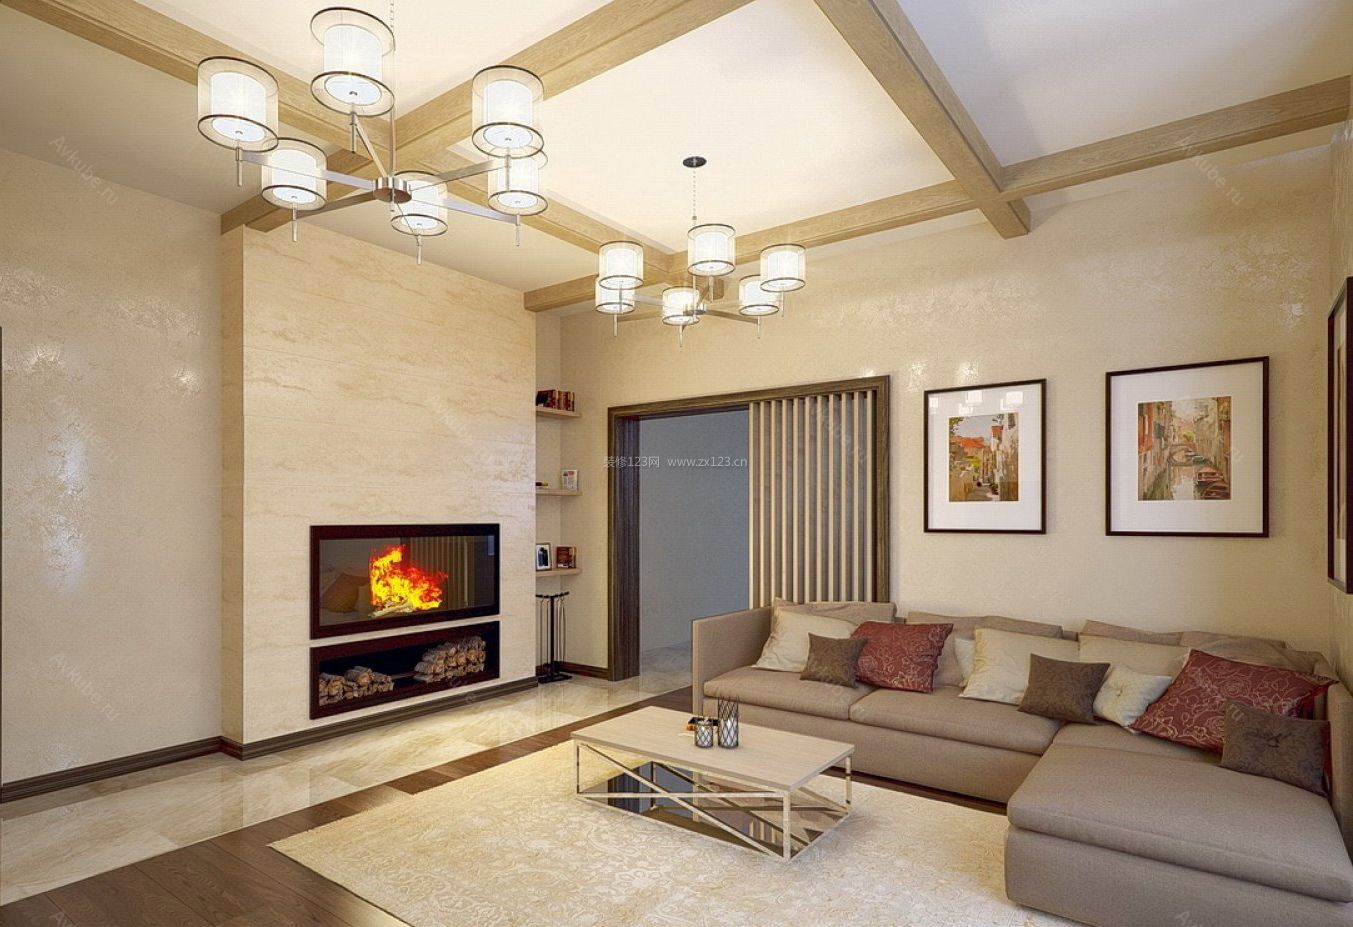 现代家庭别墅室内壁炉设计图片2021